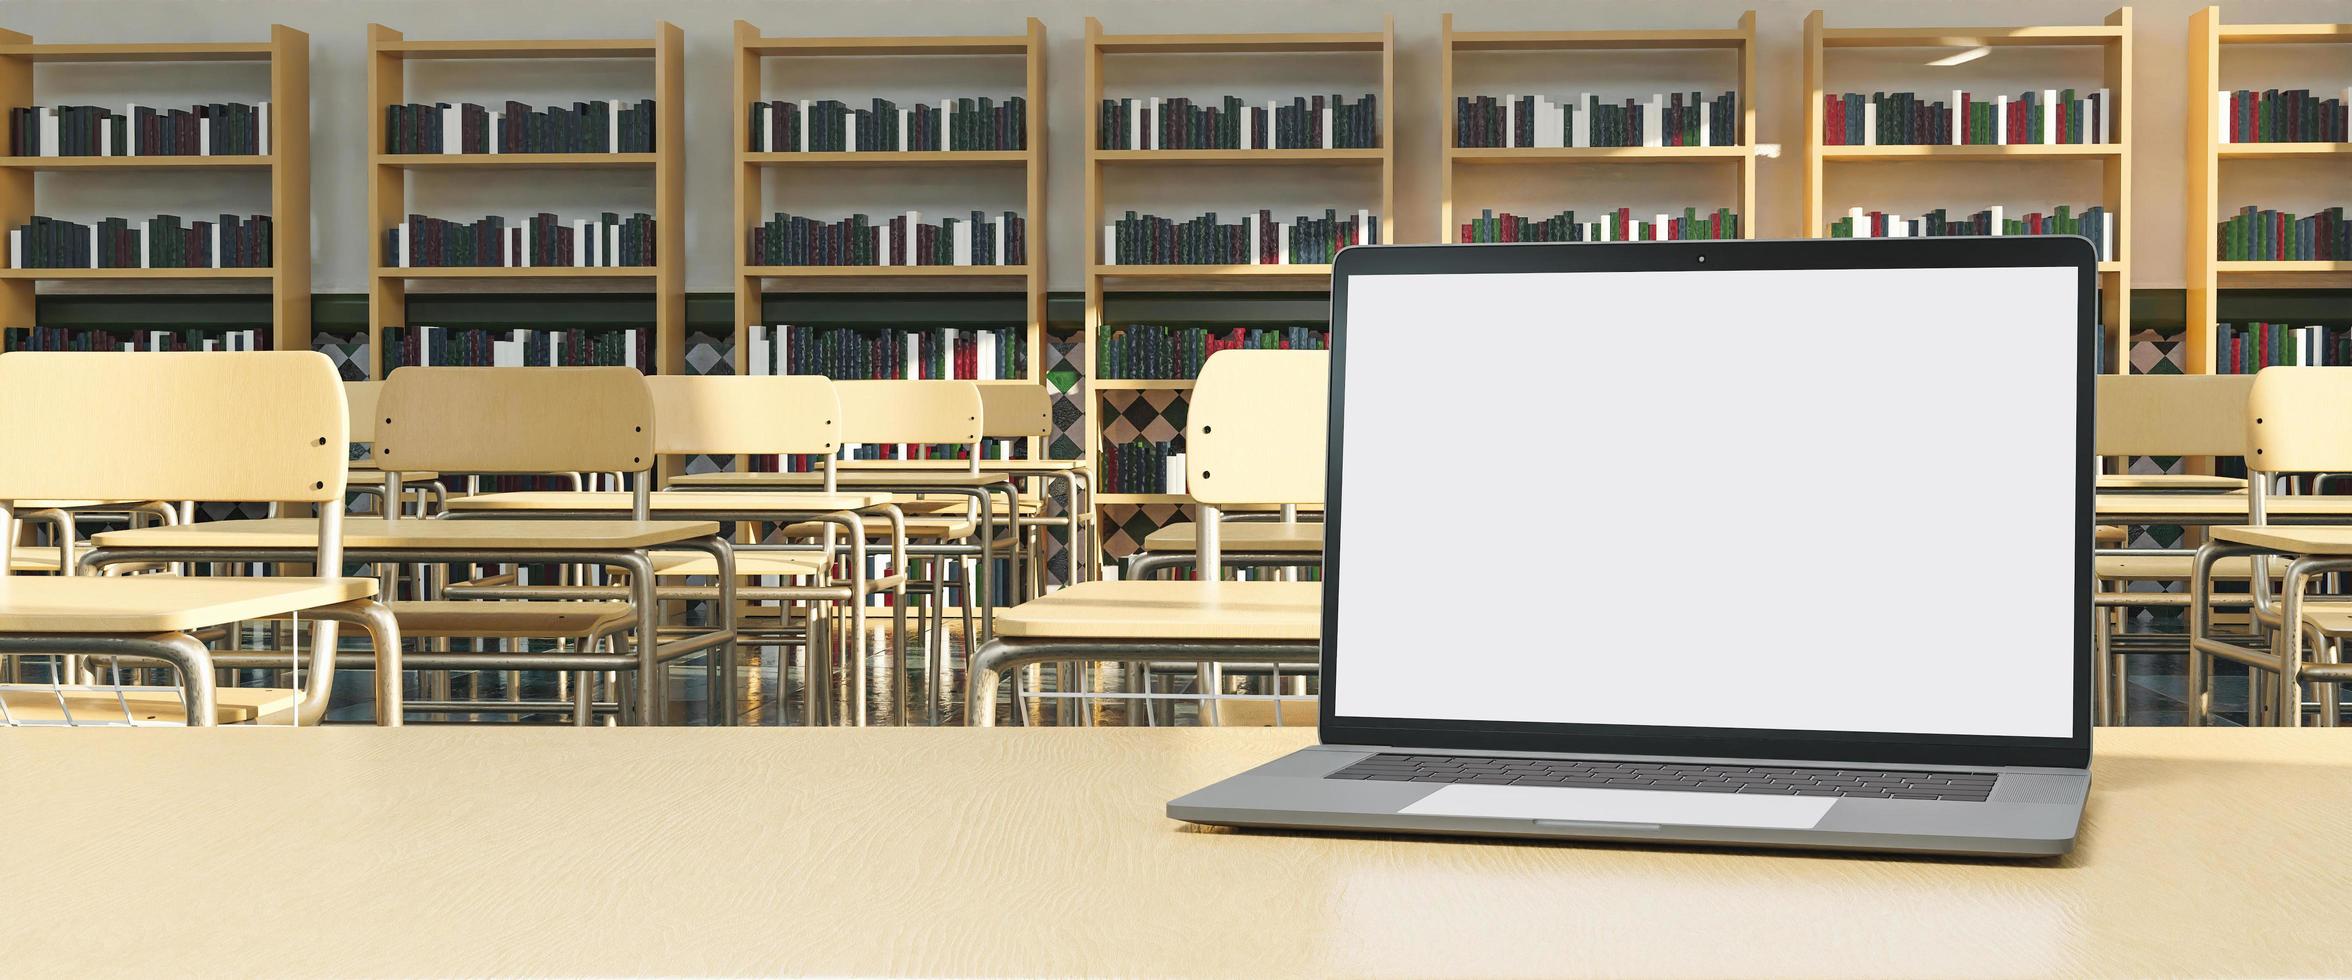 Maqueta de computadora portátil en la mesa del maestro con escritorios en el fondo foto